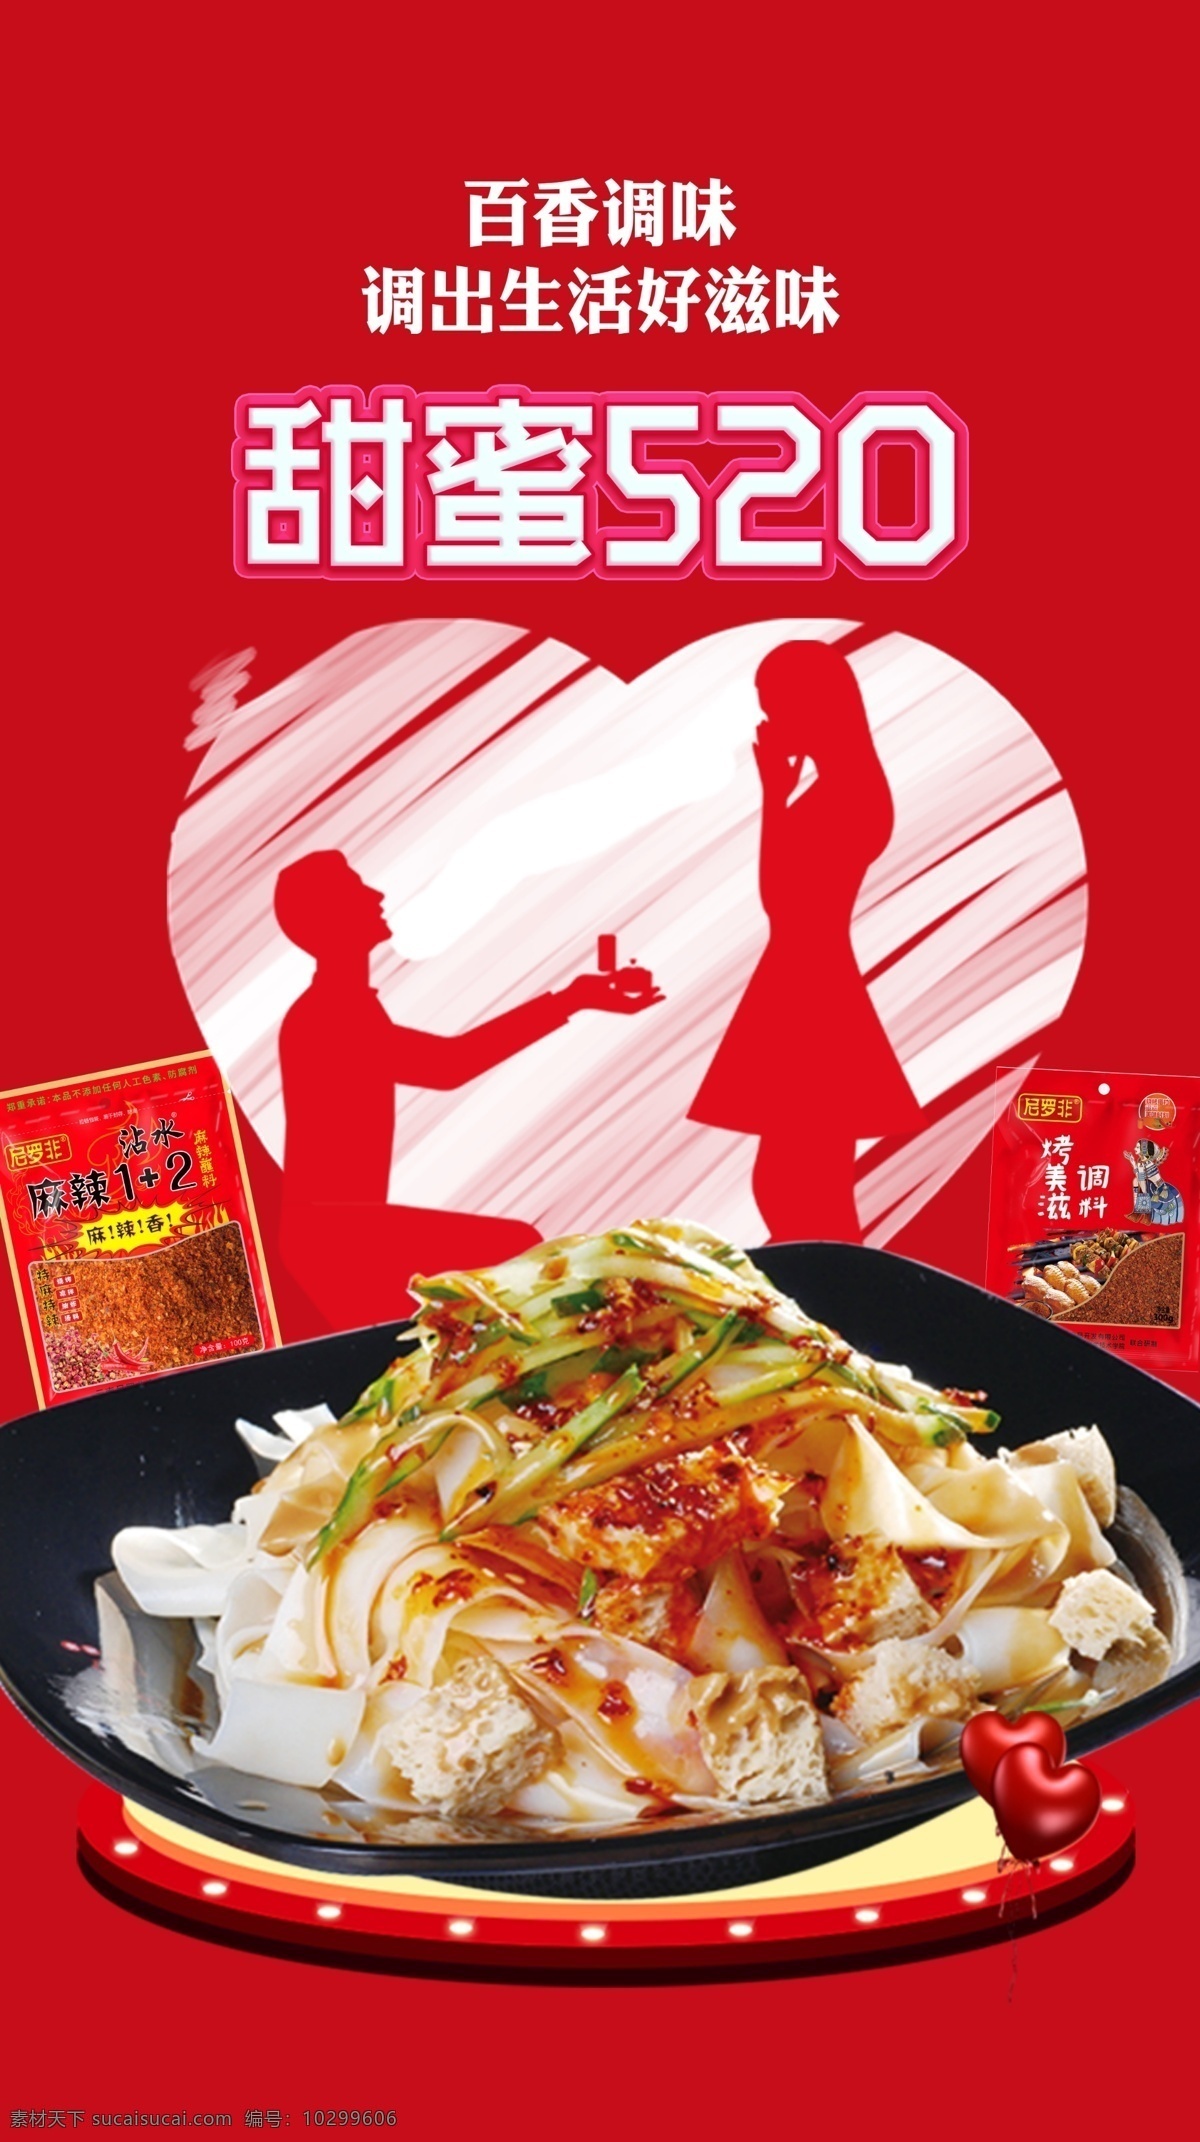 情人节 七夕 520 海报 展板 调味品 餐饮 文化宣传 甜蜜 饮食 凉菜 红色